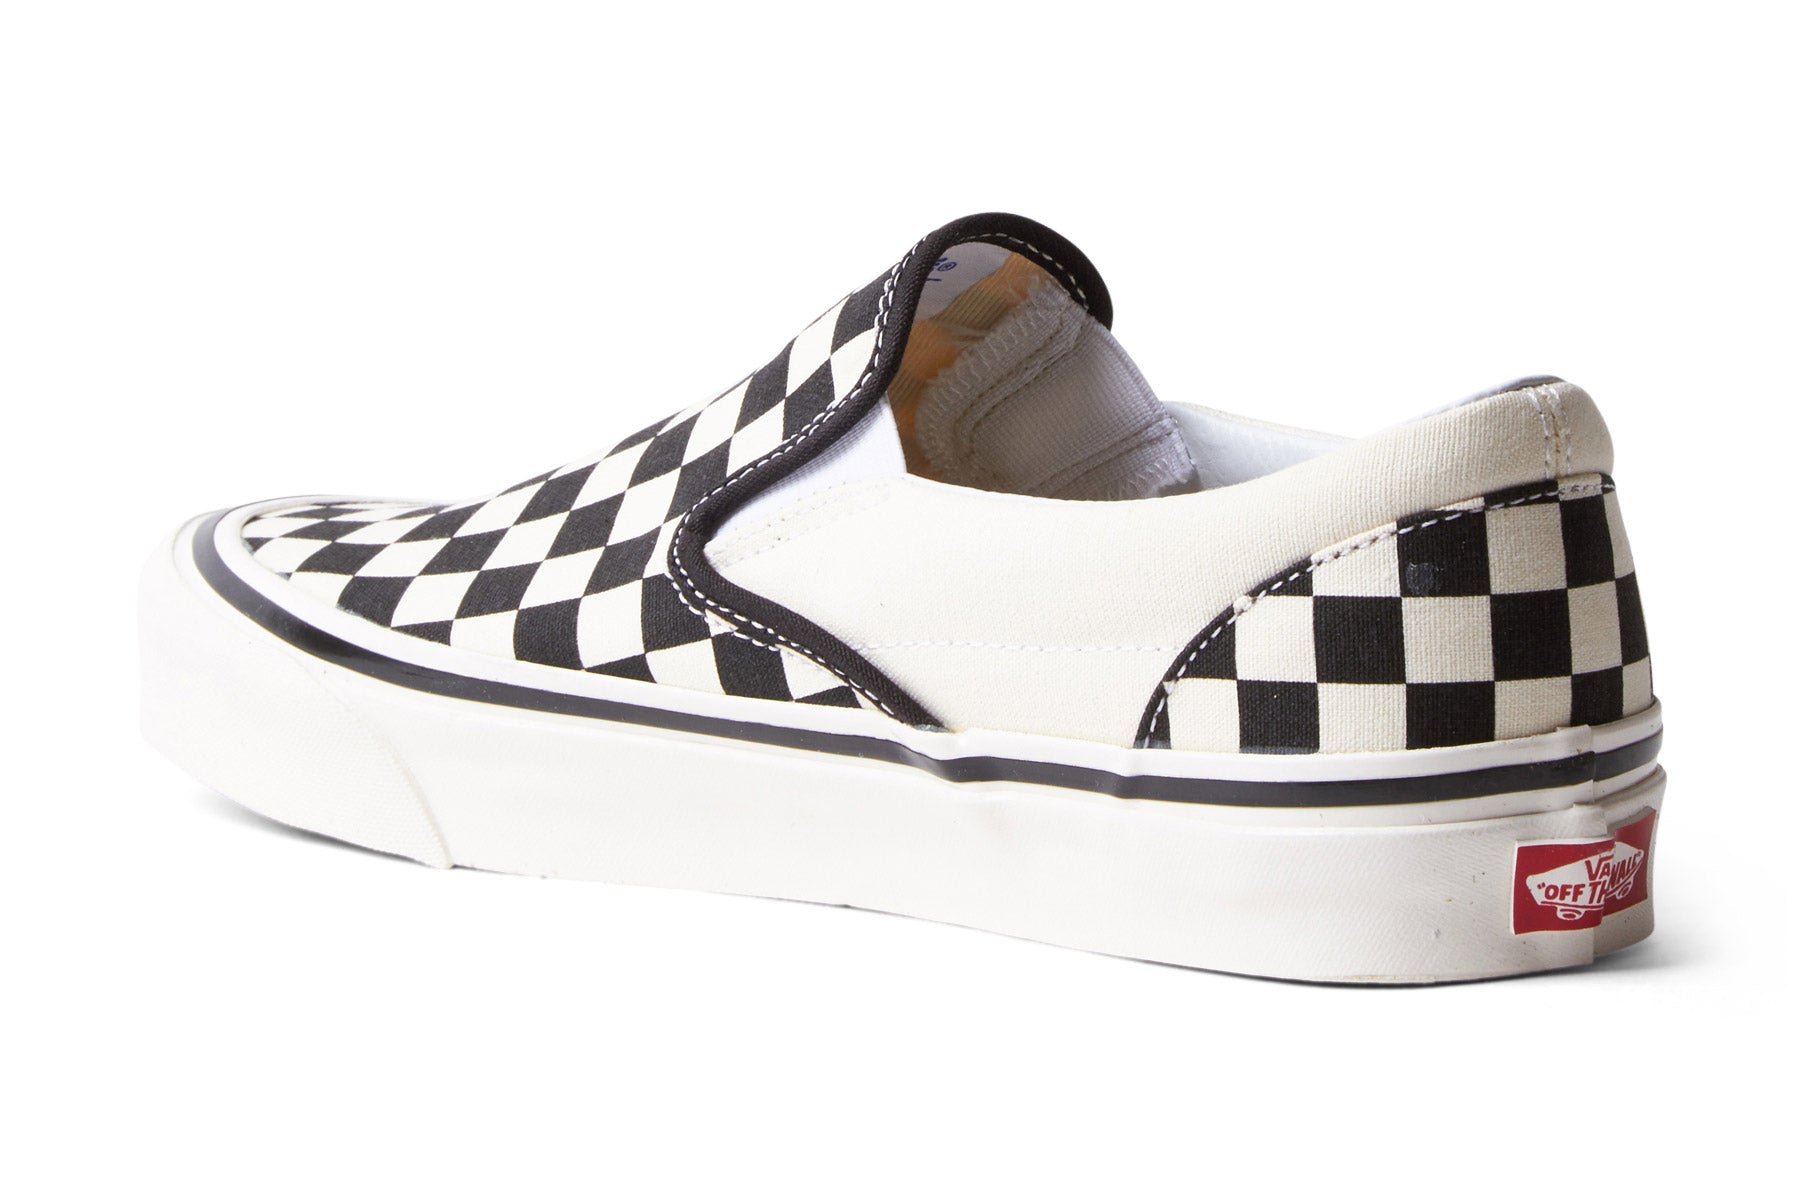 Vans Slip–On 98 DX Checkerboard (Anaheim) - Black/White